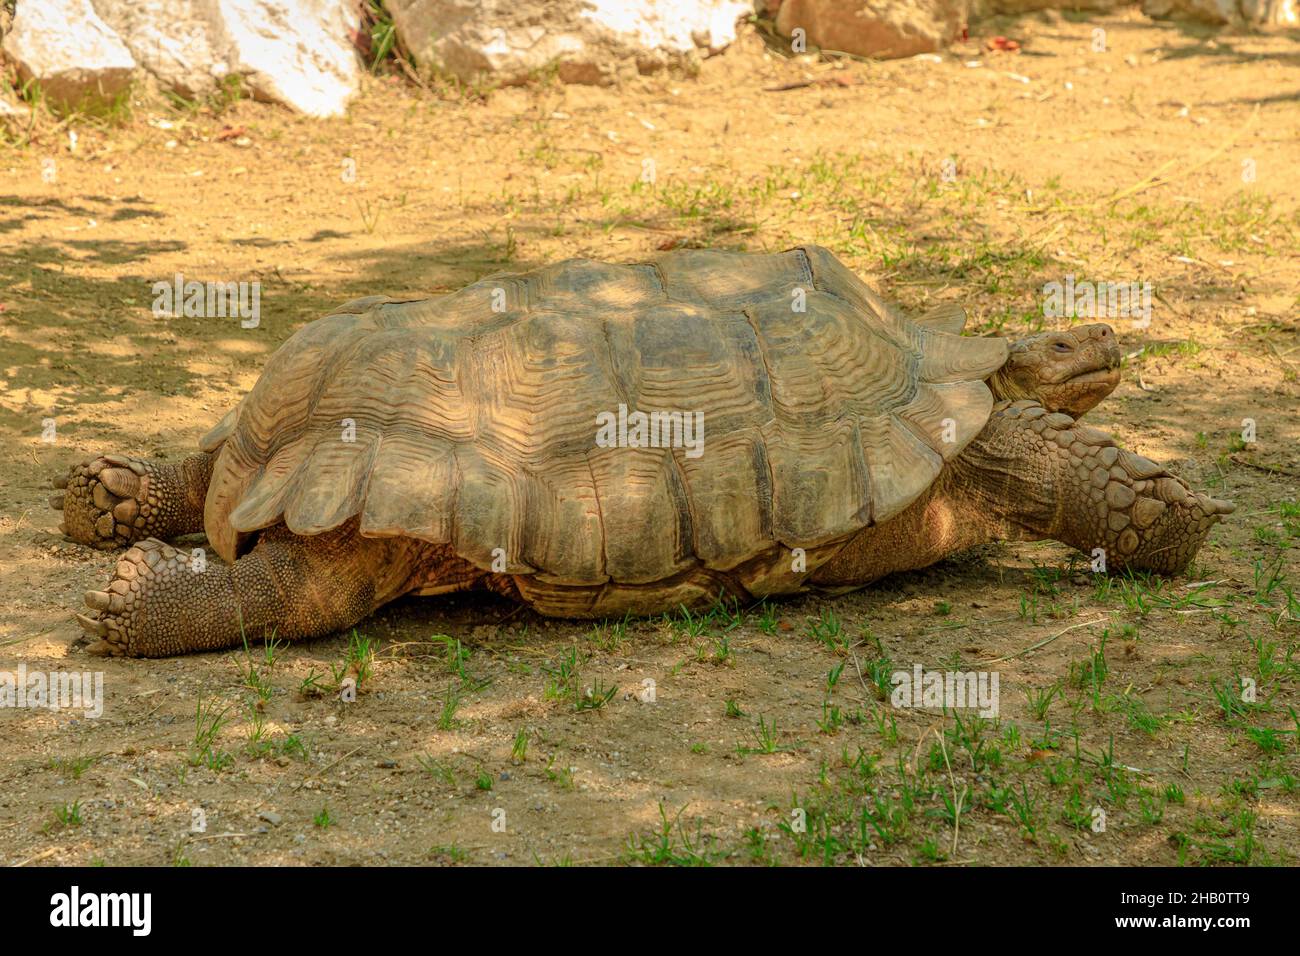 L'Africain a poussé la tortue à marcher sur l'herbe.Espèces de Centrochelys sulcata de la famille des Testudinidae.Adultes de tortue terrestre originaire du Sahara Banque D'Images